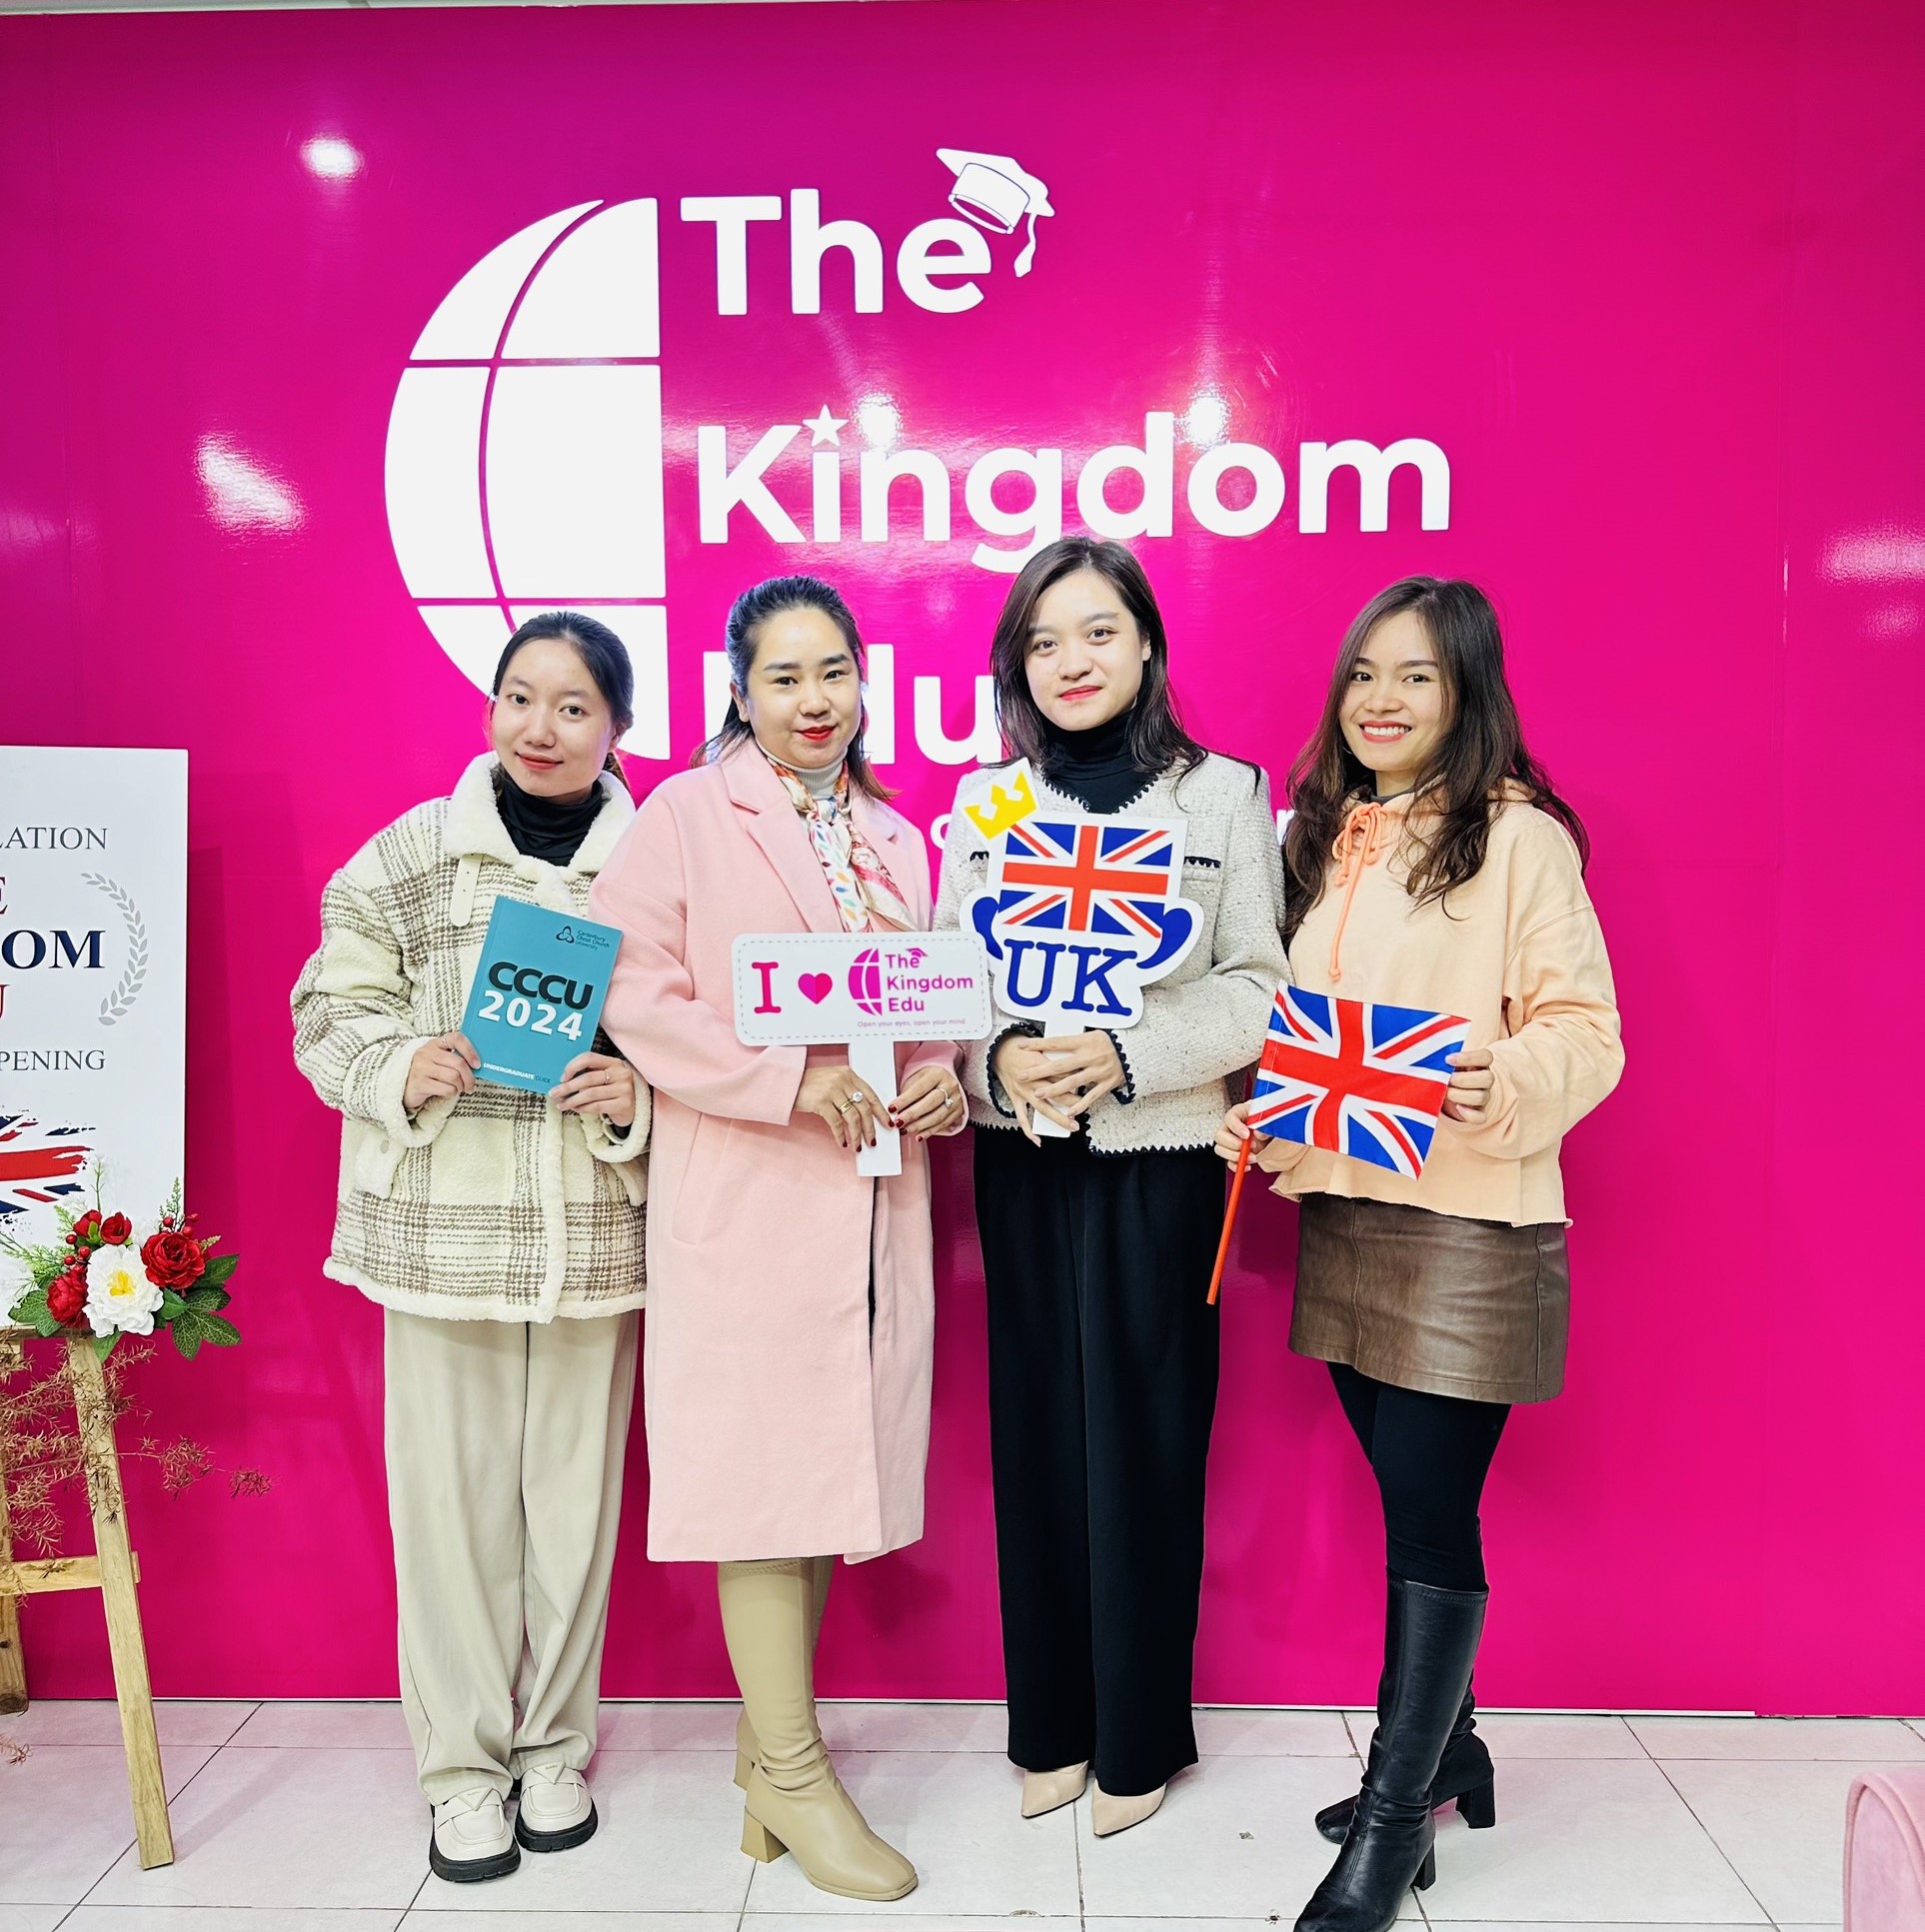 Team The Kingdom chụp hình lưu niệm cùng Ms. Phương Anh - Đại diện trường Canterbury Christ Church University (UK)